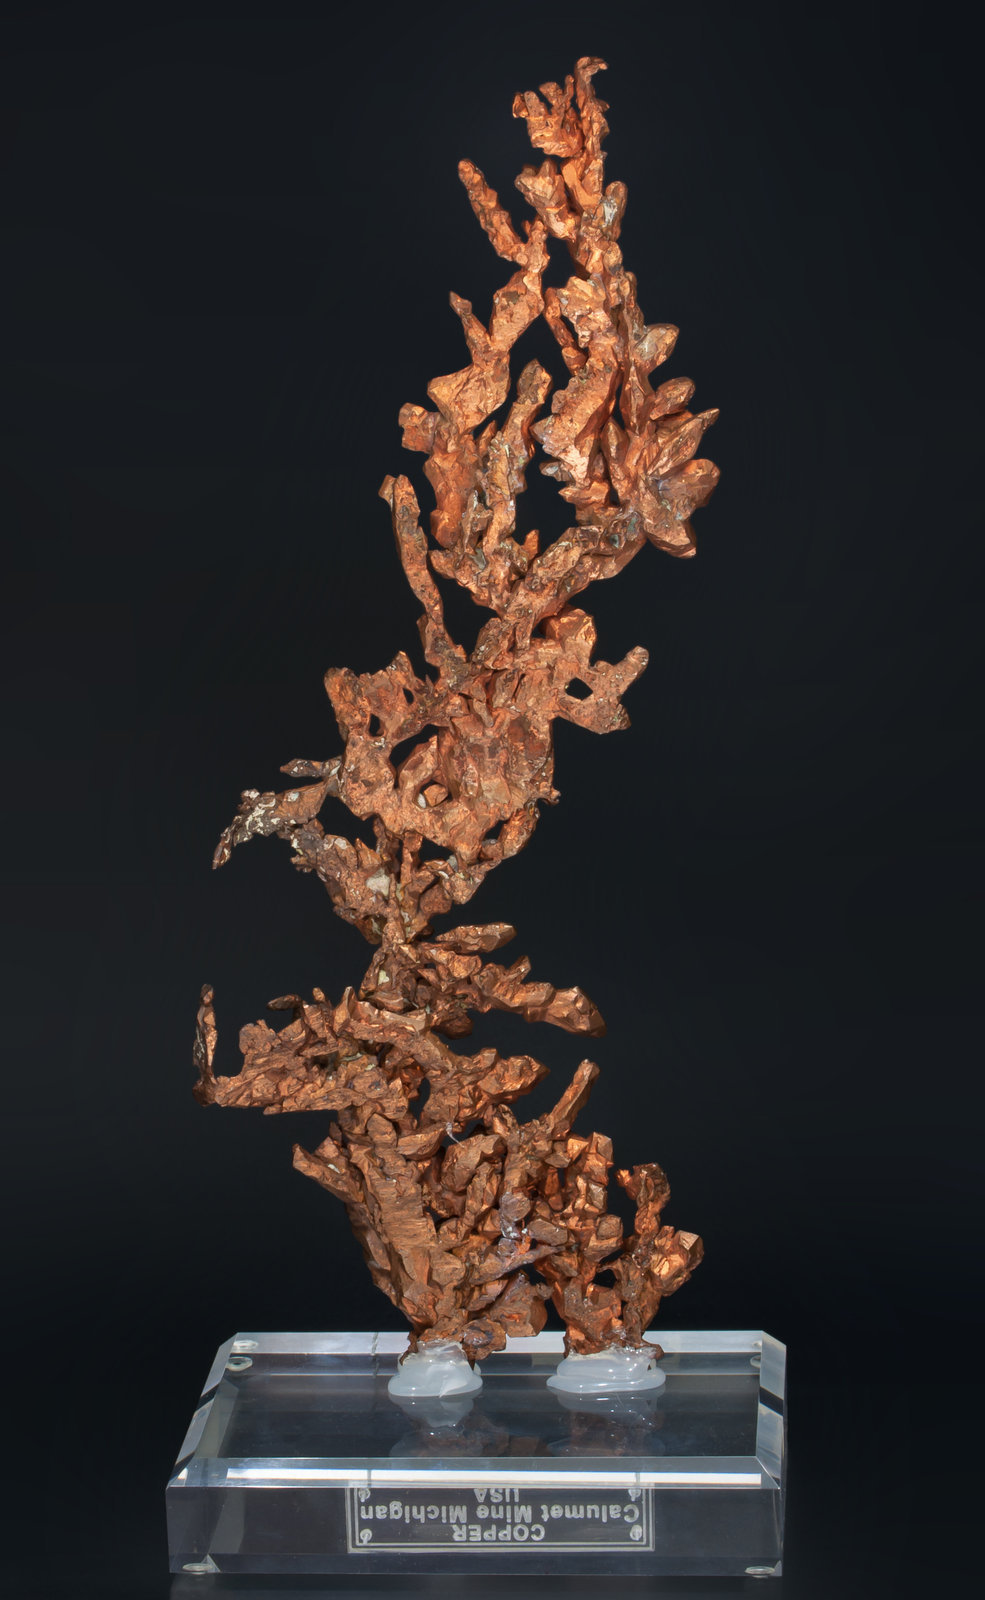 specimens/s_imagesAC2/Copper-MF98AC2r.jpg